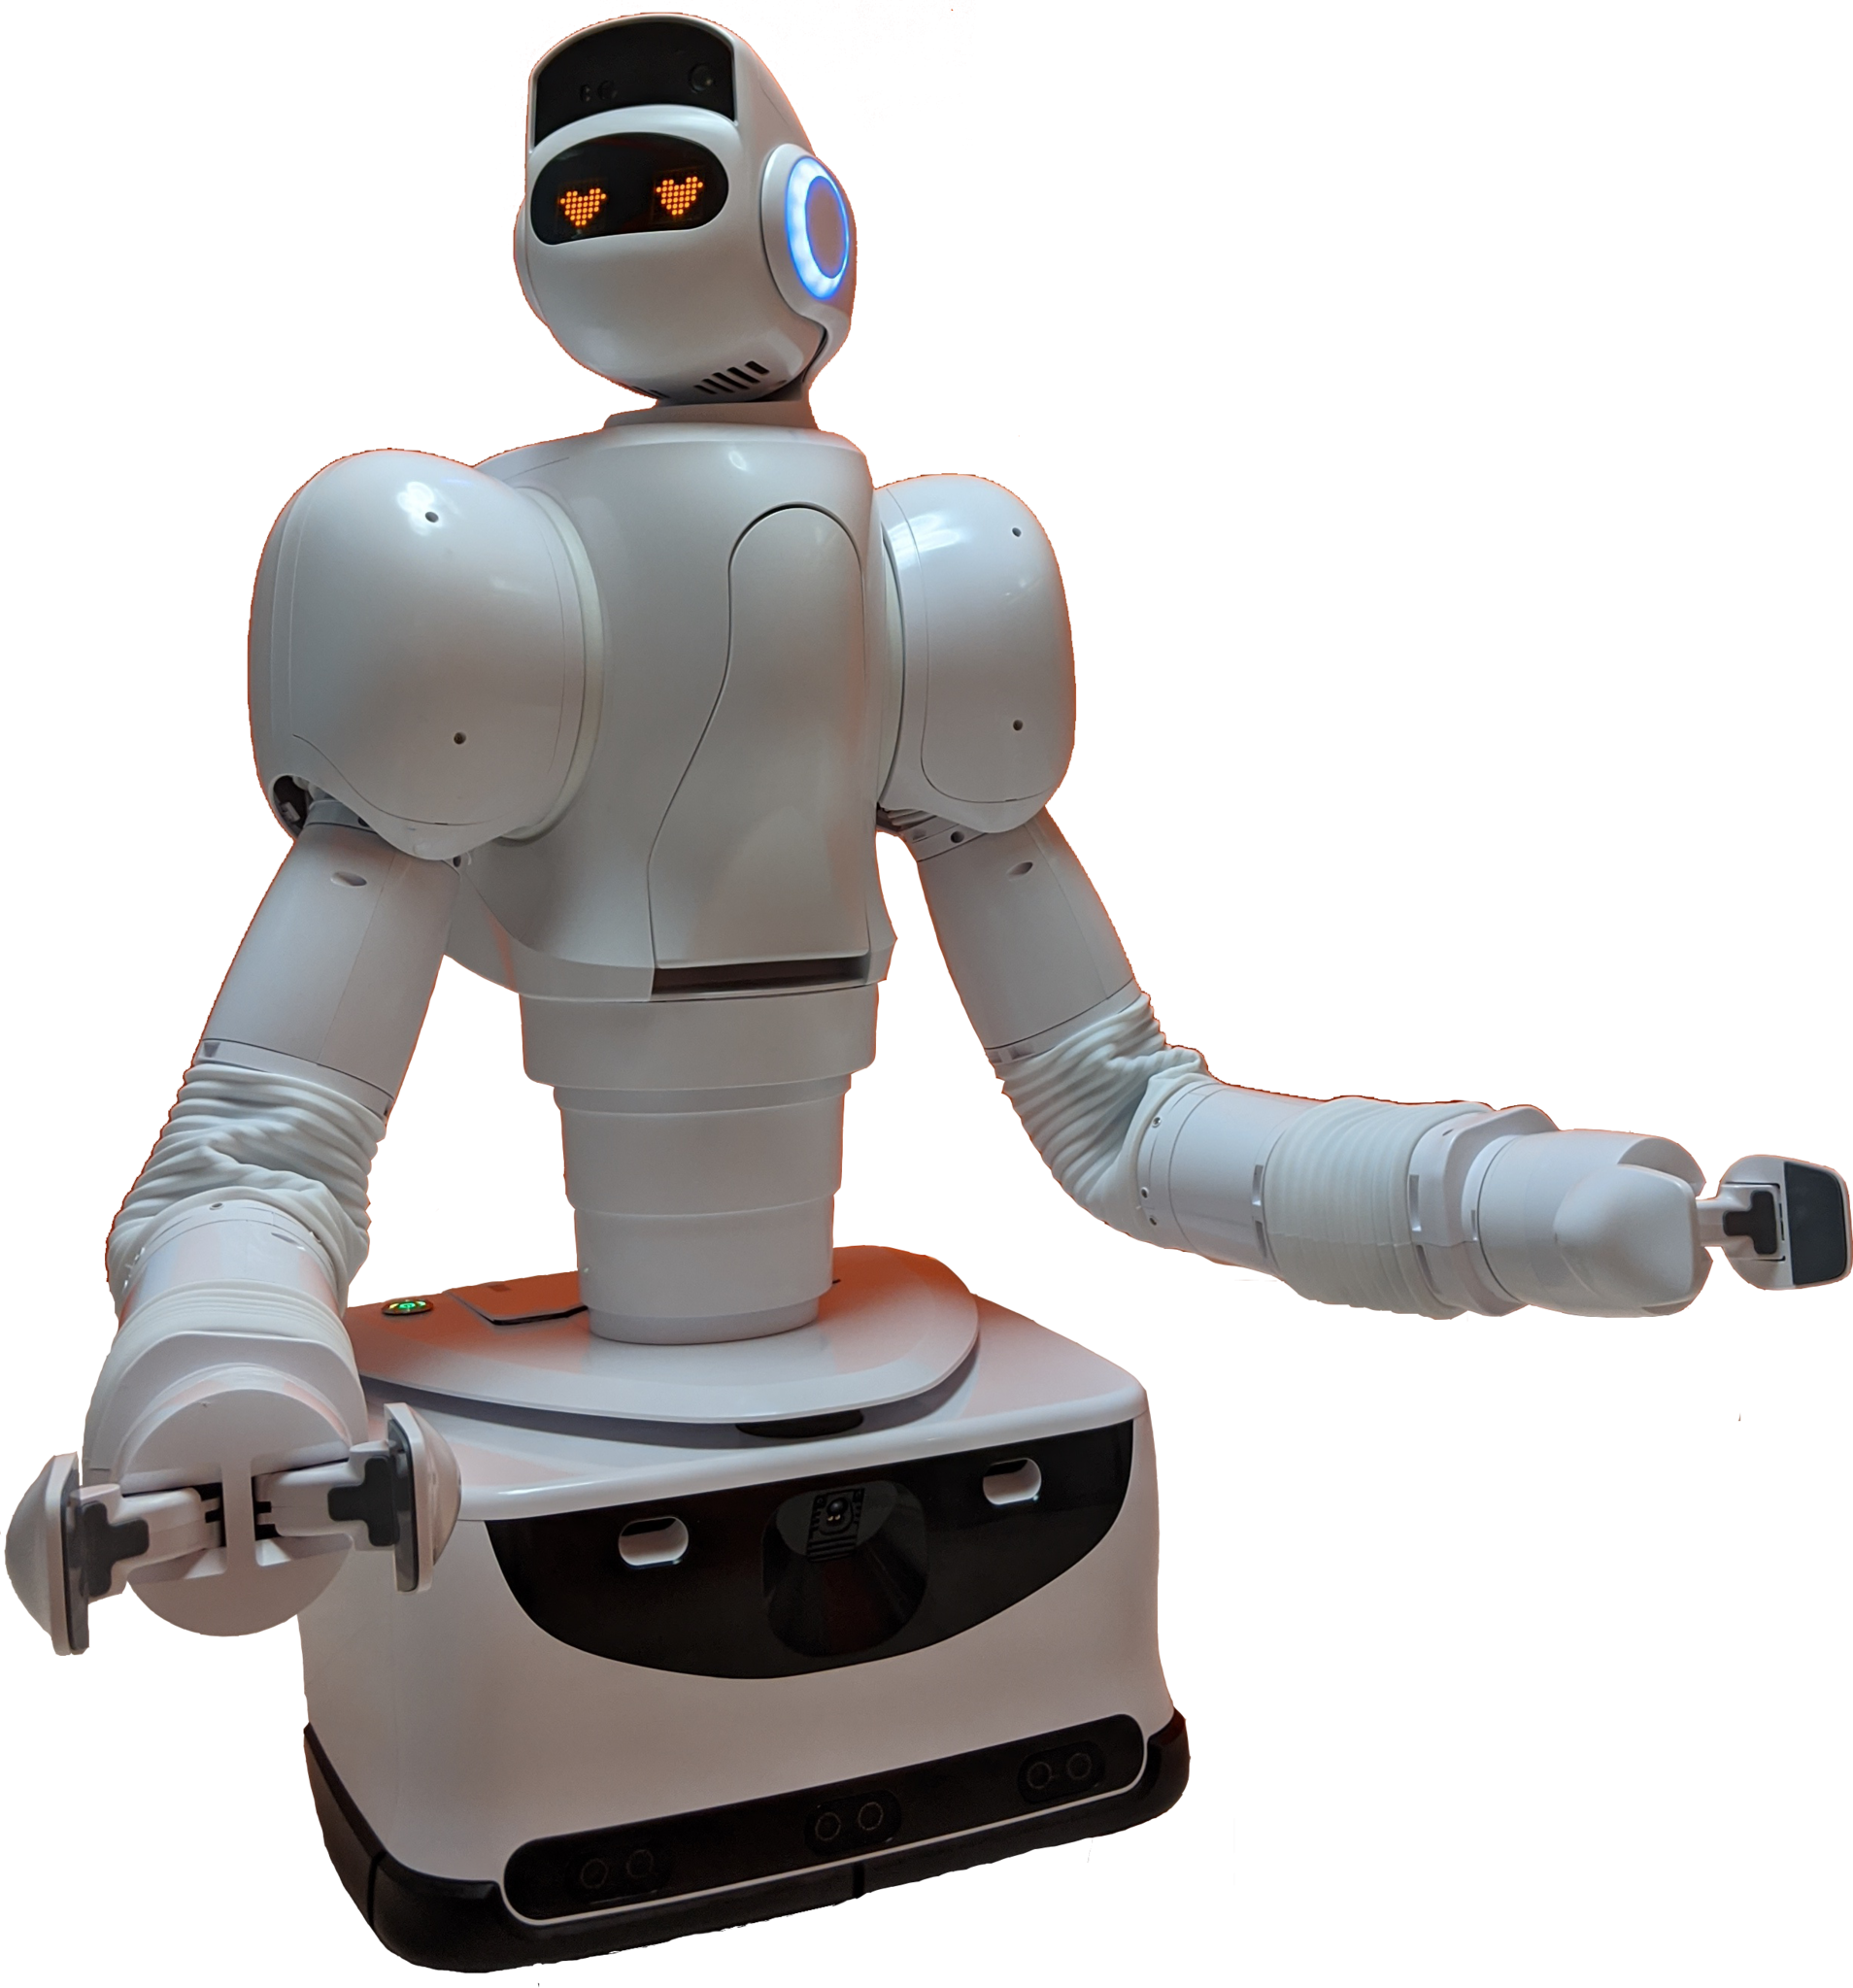 Ai搭載型ロボット アイオロス ロボット の開発 販売を行うaeolus Robotics社 総額2 000万ドル Usd の資金調達を実施 Aeolus Robotics Inc のプレスリリース